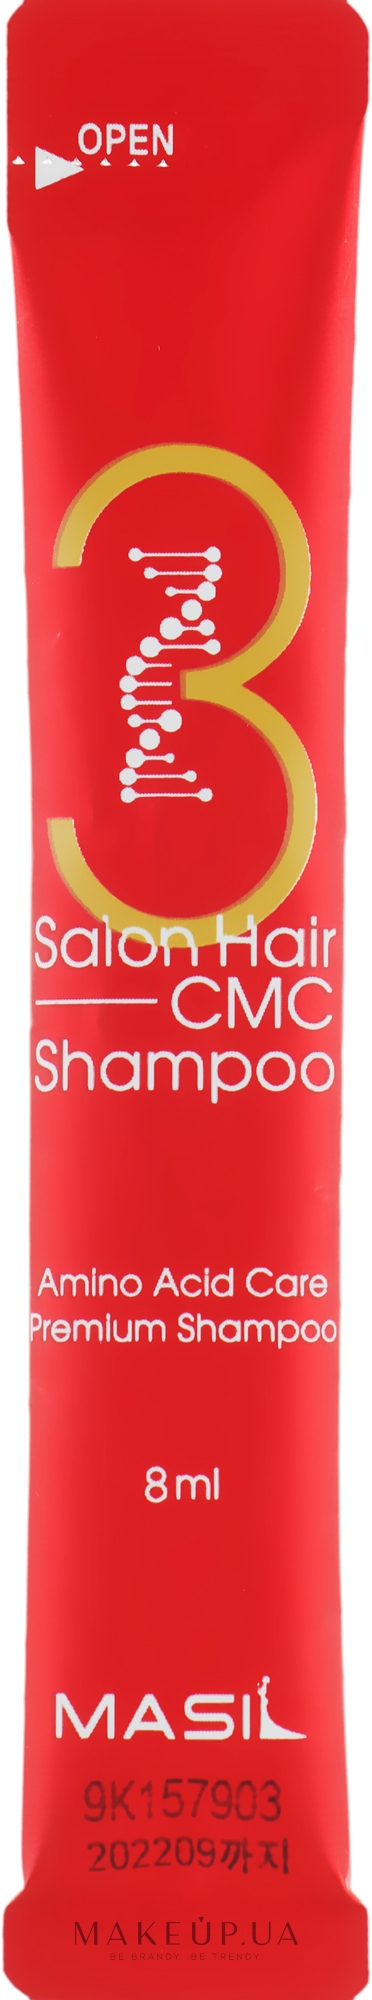 Шампунь з амінокислотами - Masil 3 Salon Hair CMC Shampoo (пробник) — фото 1x8ml